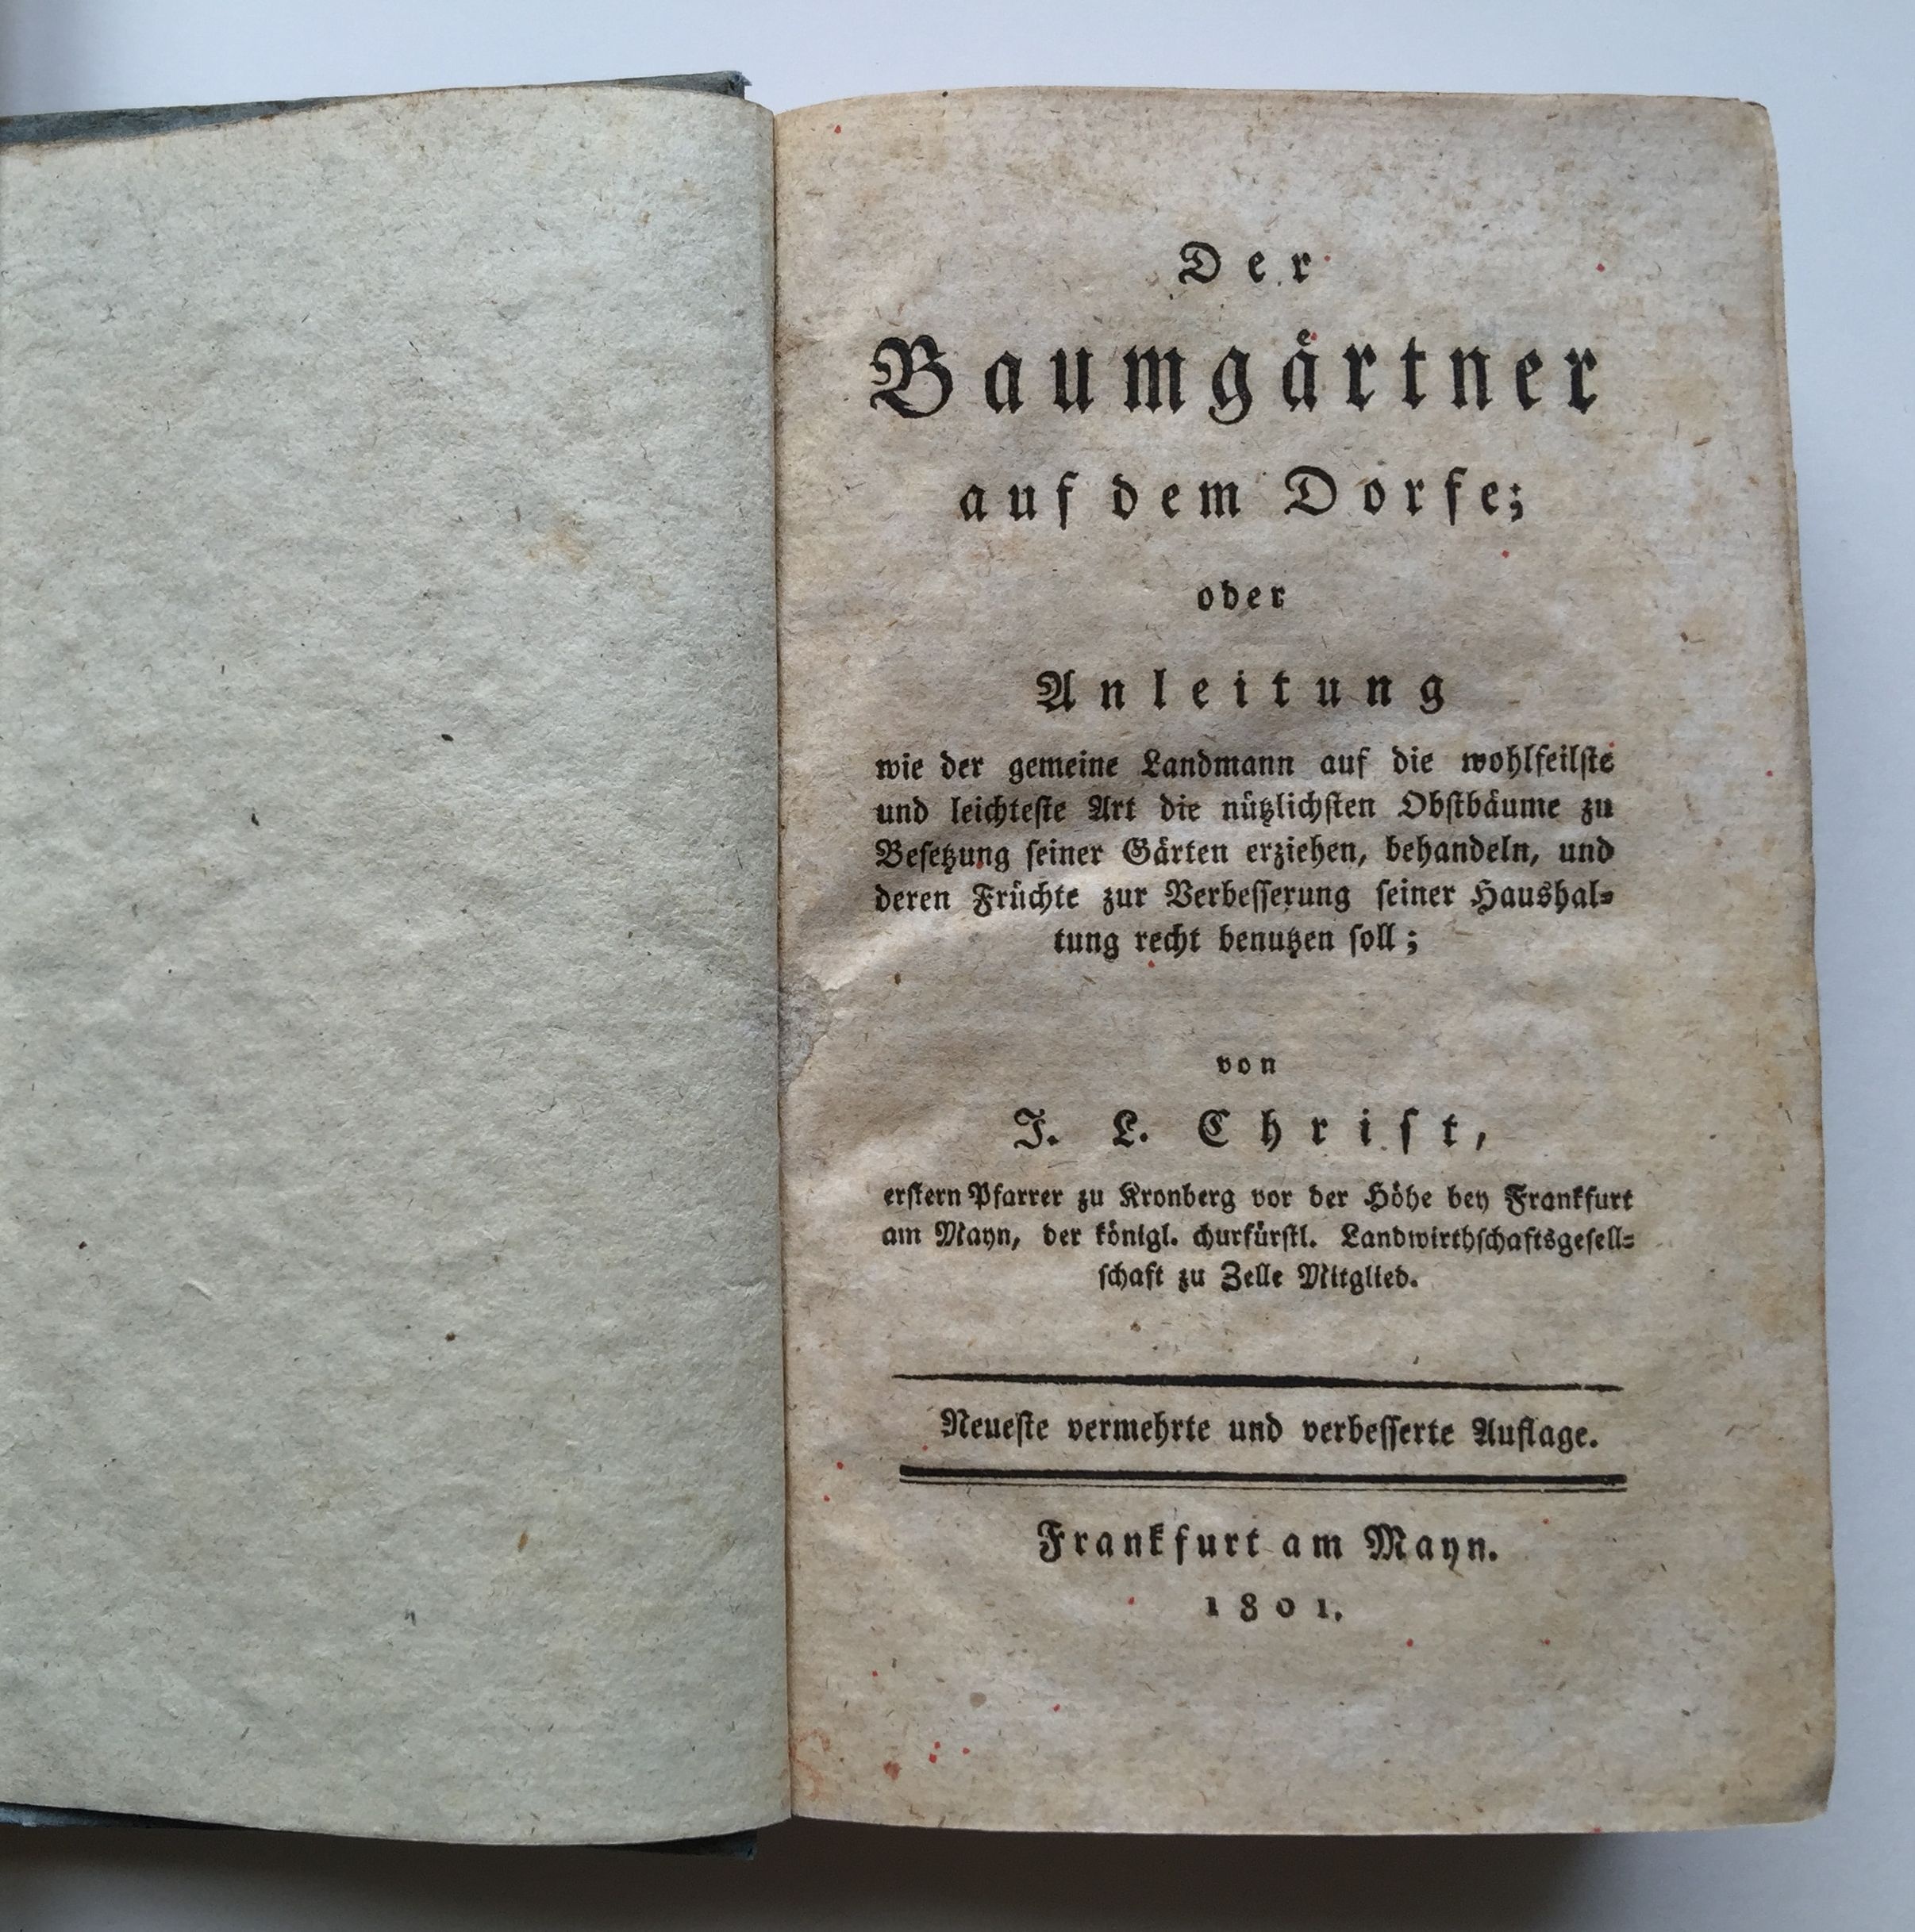 Johann Ludwig Christ, Der Baumgärtner auf dem Dorfe, neuste Auflage, 1801. (Taunus-Rhein-Main - Regionalgeschichtliche Sammlung Dr. Stefan Naas CC BY-NC-SA)